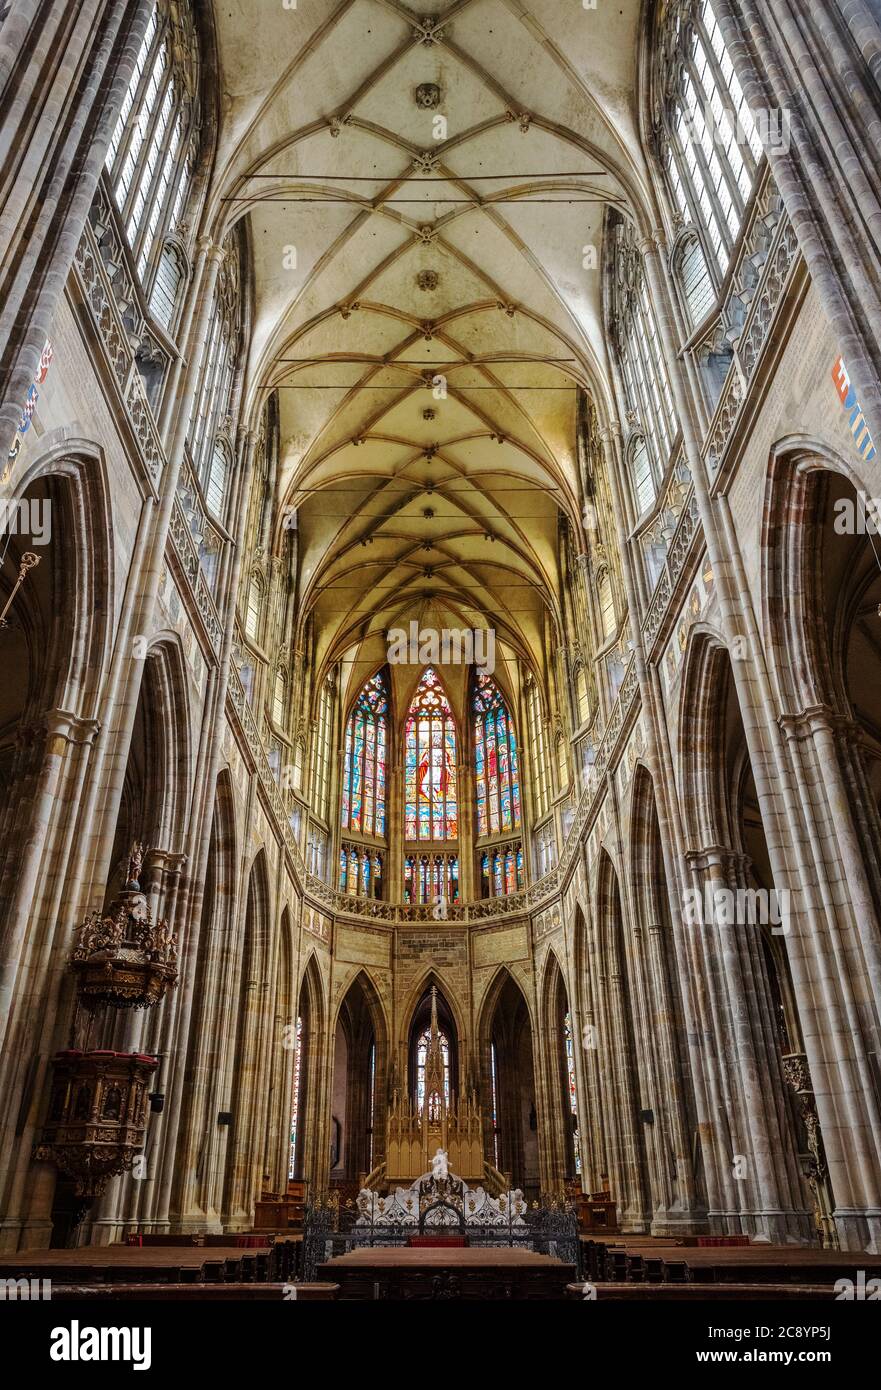 PRAGUE - 10 MARS 2020 : intérieur de la cathédrale Saint-Vitus de Prague. Nef principal et vitraux au-dessus de l'autel Banque D'Images